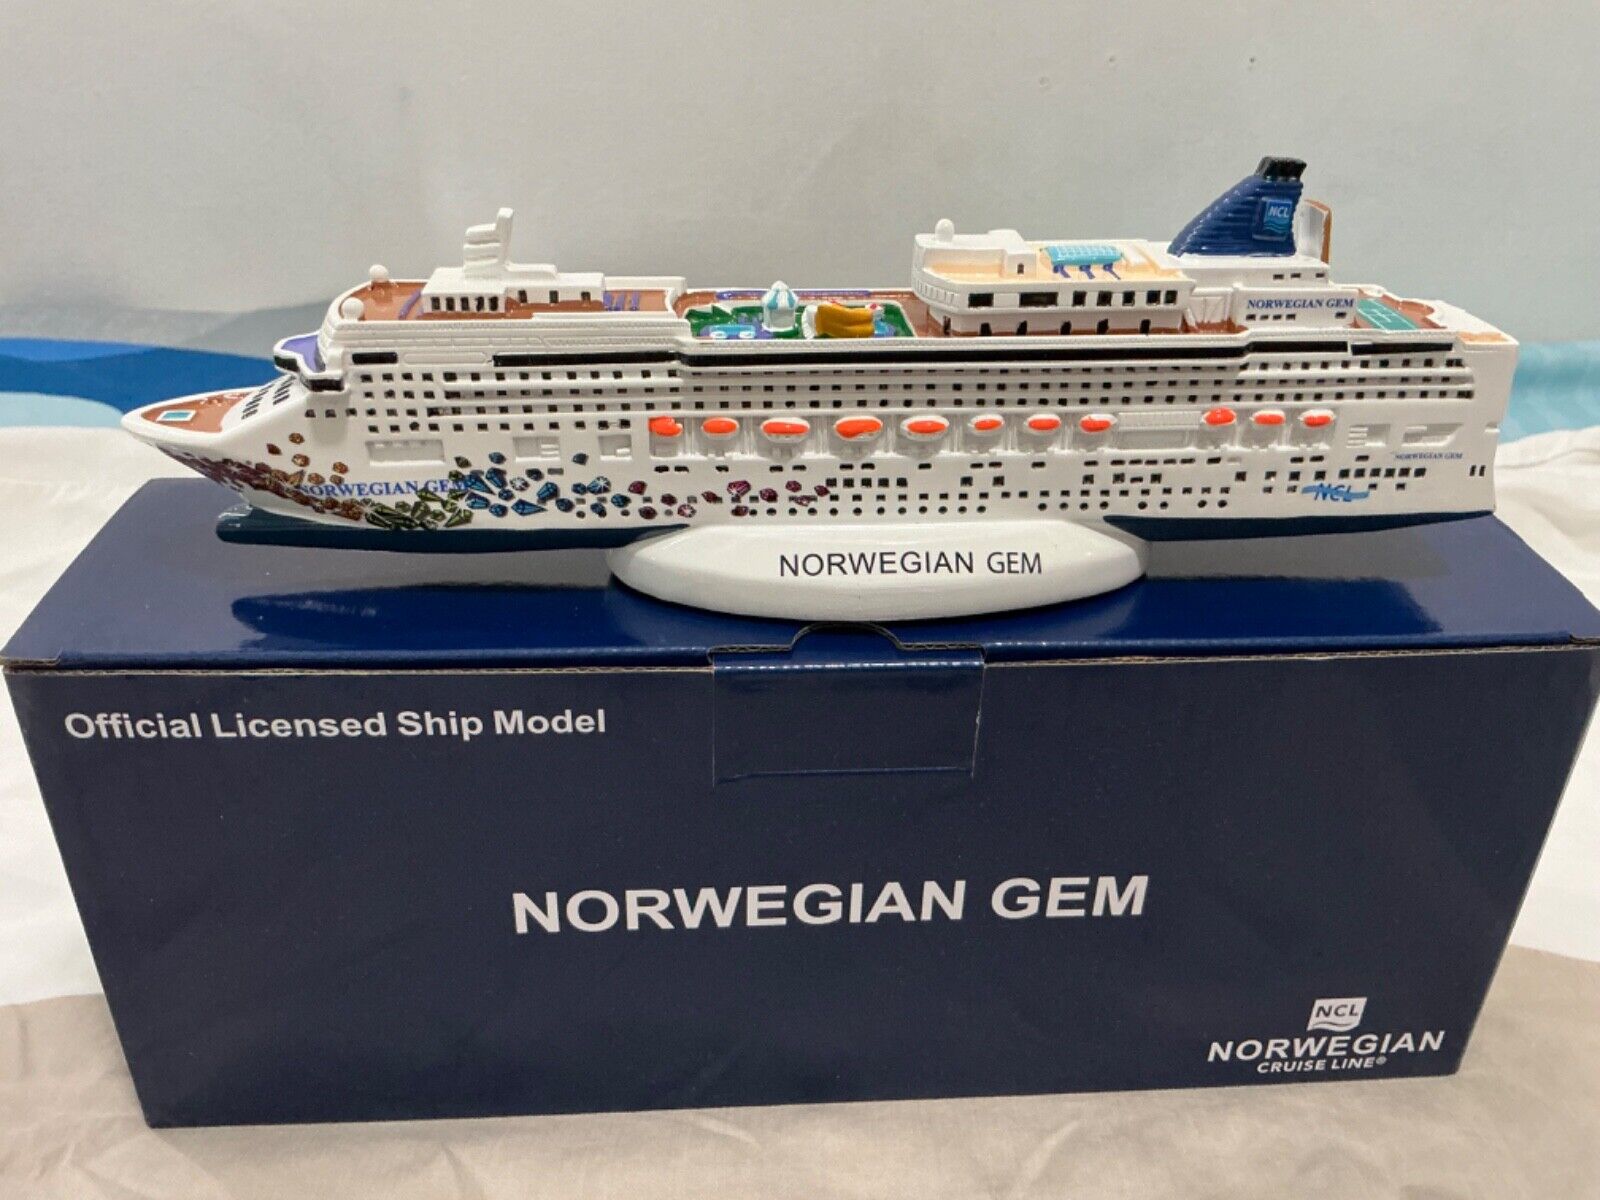 NORWEGIAN GEM Norwegian Cruise Line Resin Ship Model 10.5”